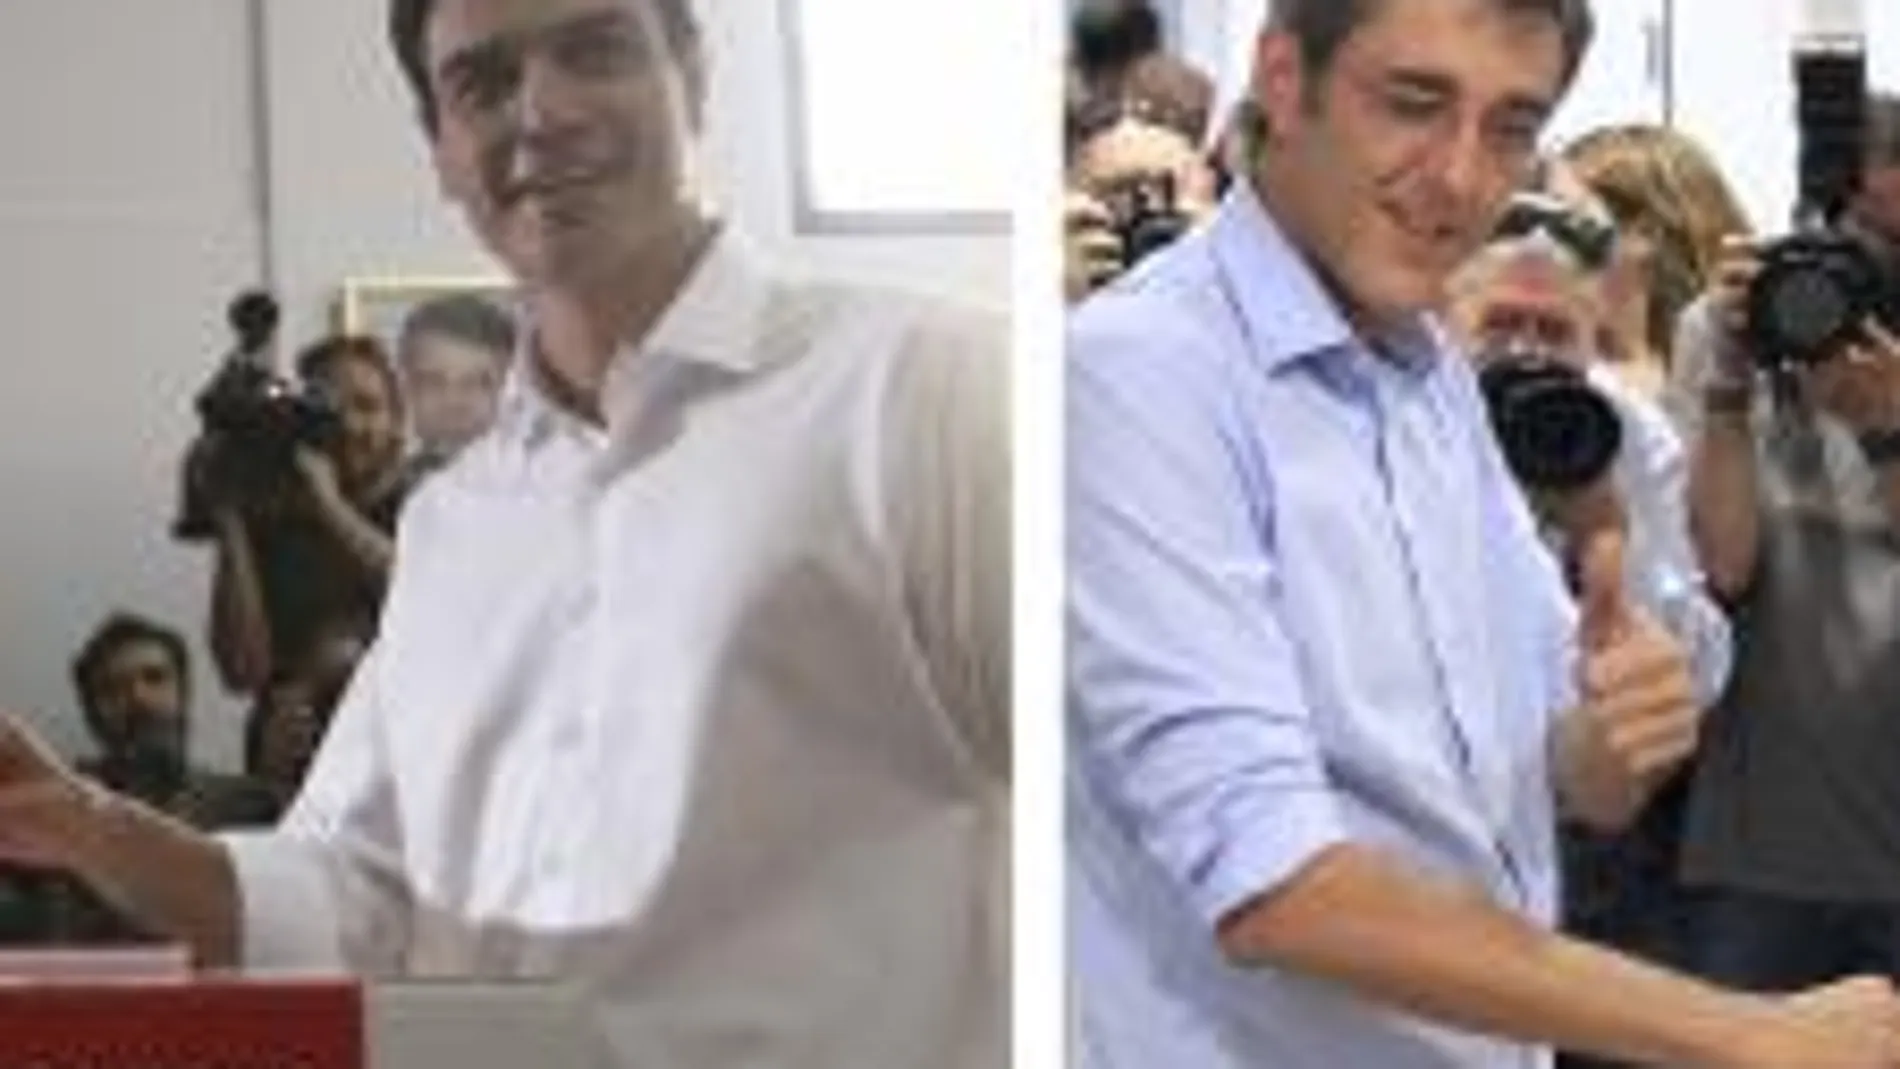 De izquierd a derecha, votando, Pedro Sánchez, Eduardo Madina y José Antonio Pérez Tapias.